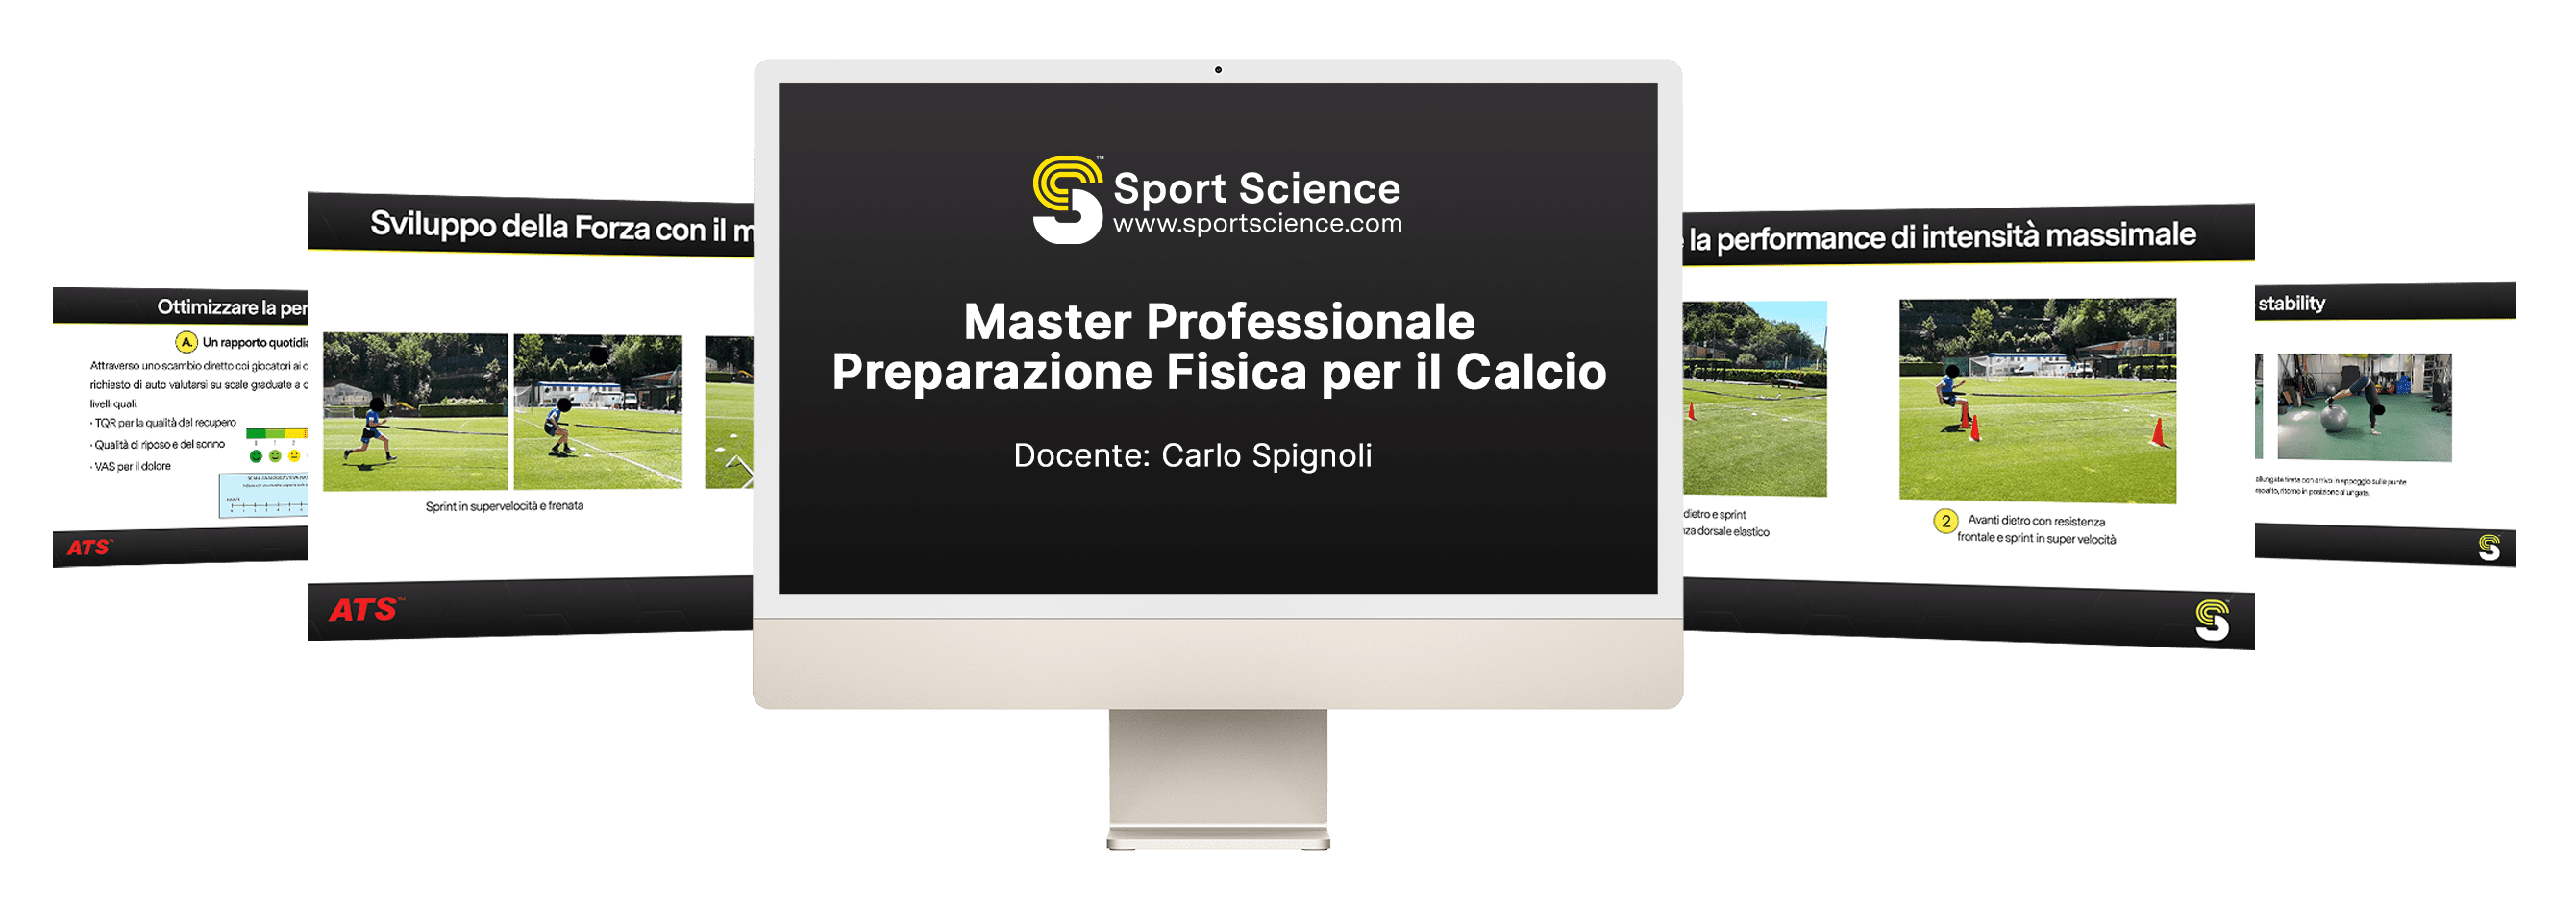 Master Professionale Preparazione Fisica per il Calcio